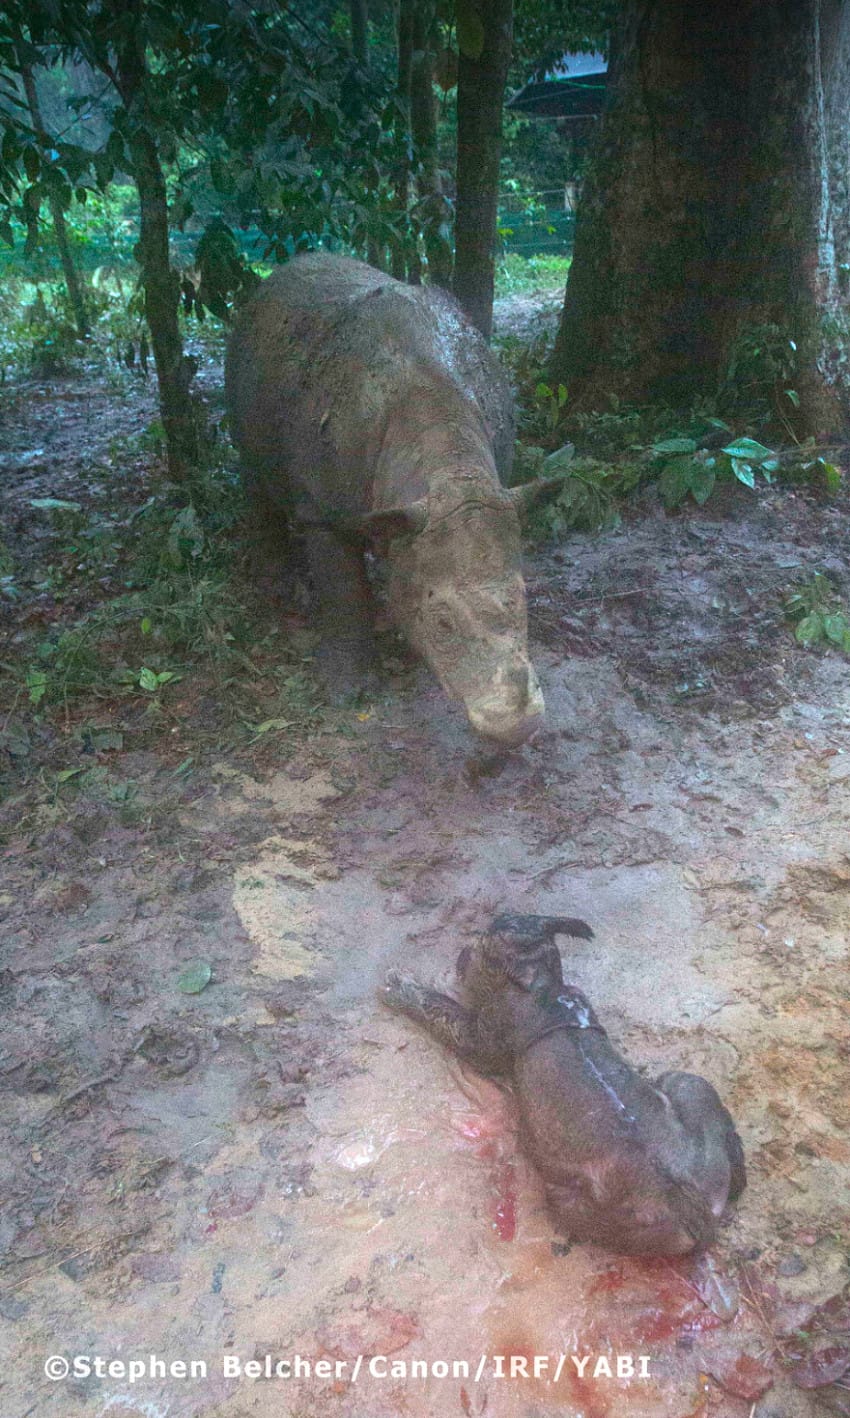 rare rhino calf birth